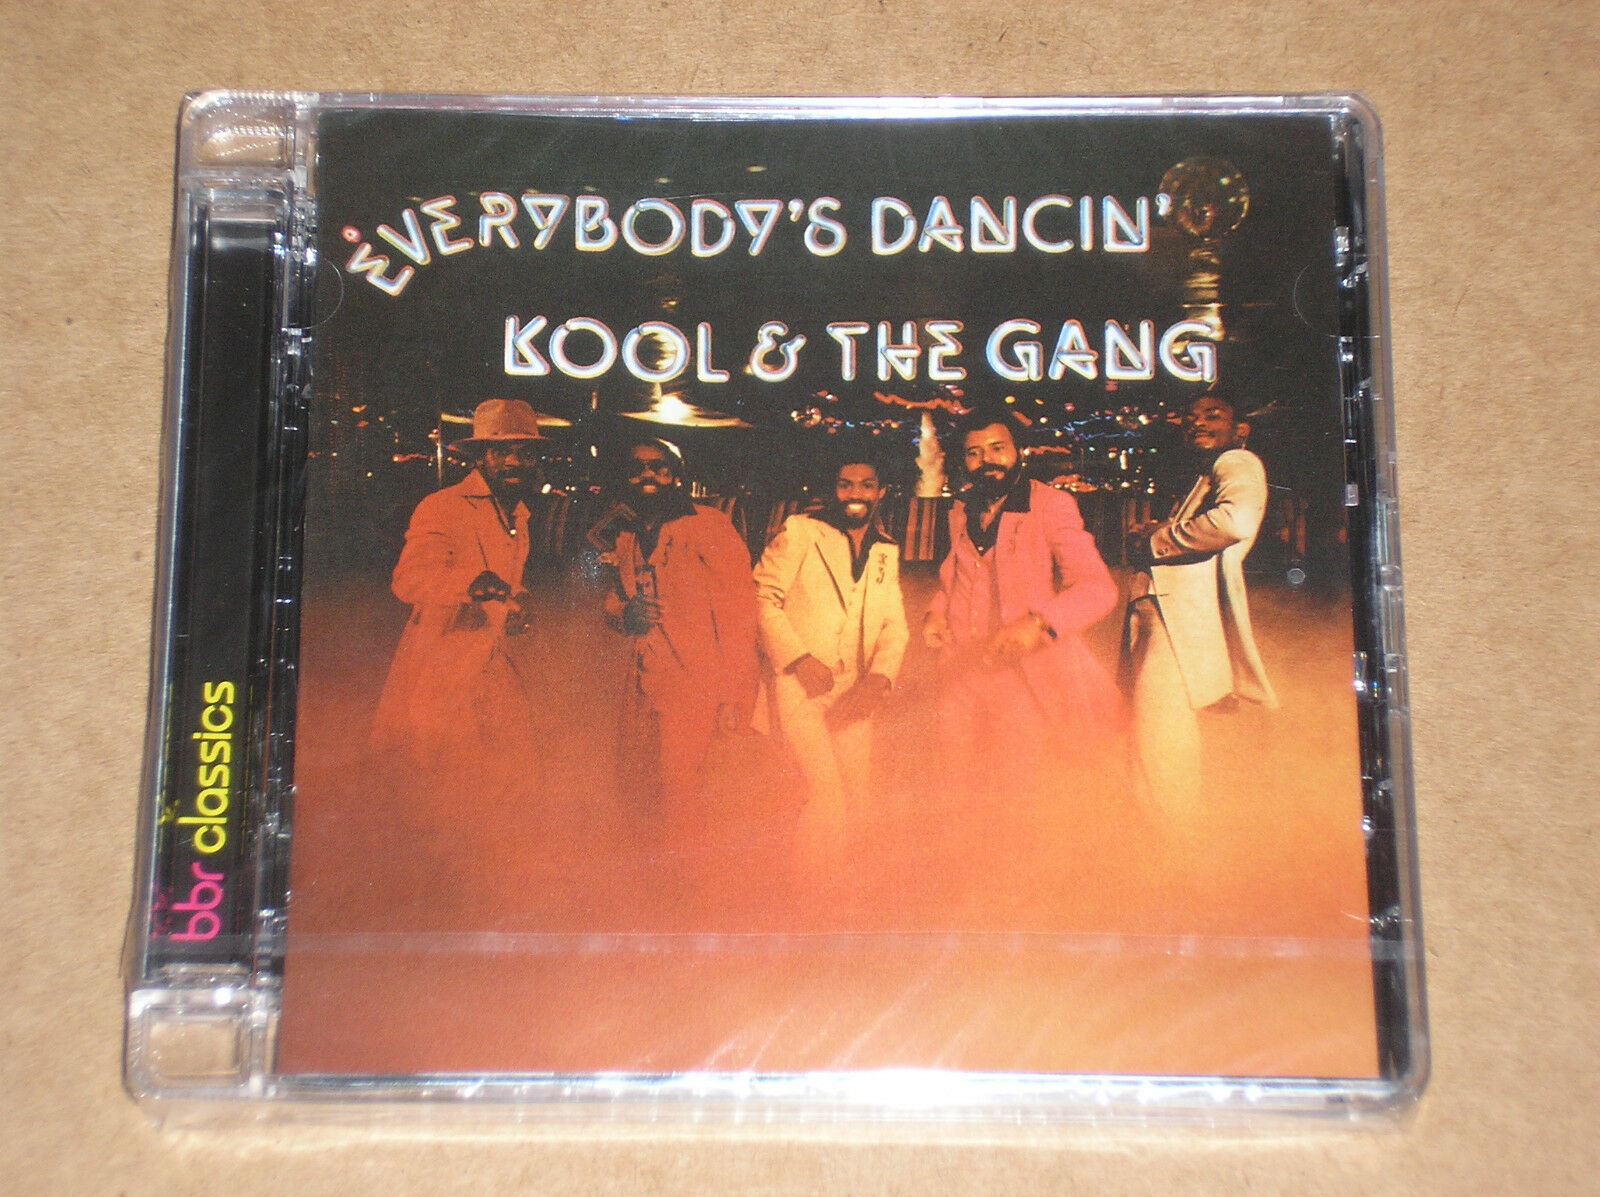 KOOL AND THE GANG - EVERYBODY'S DANCIN' 